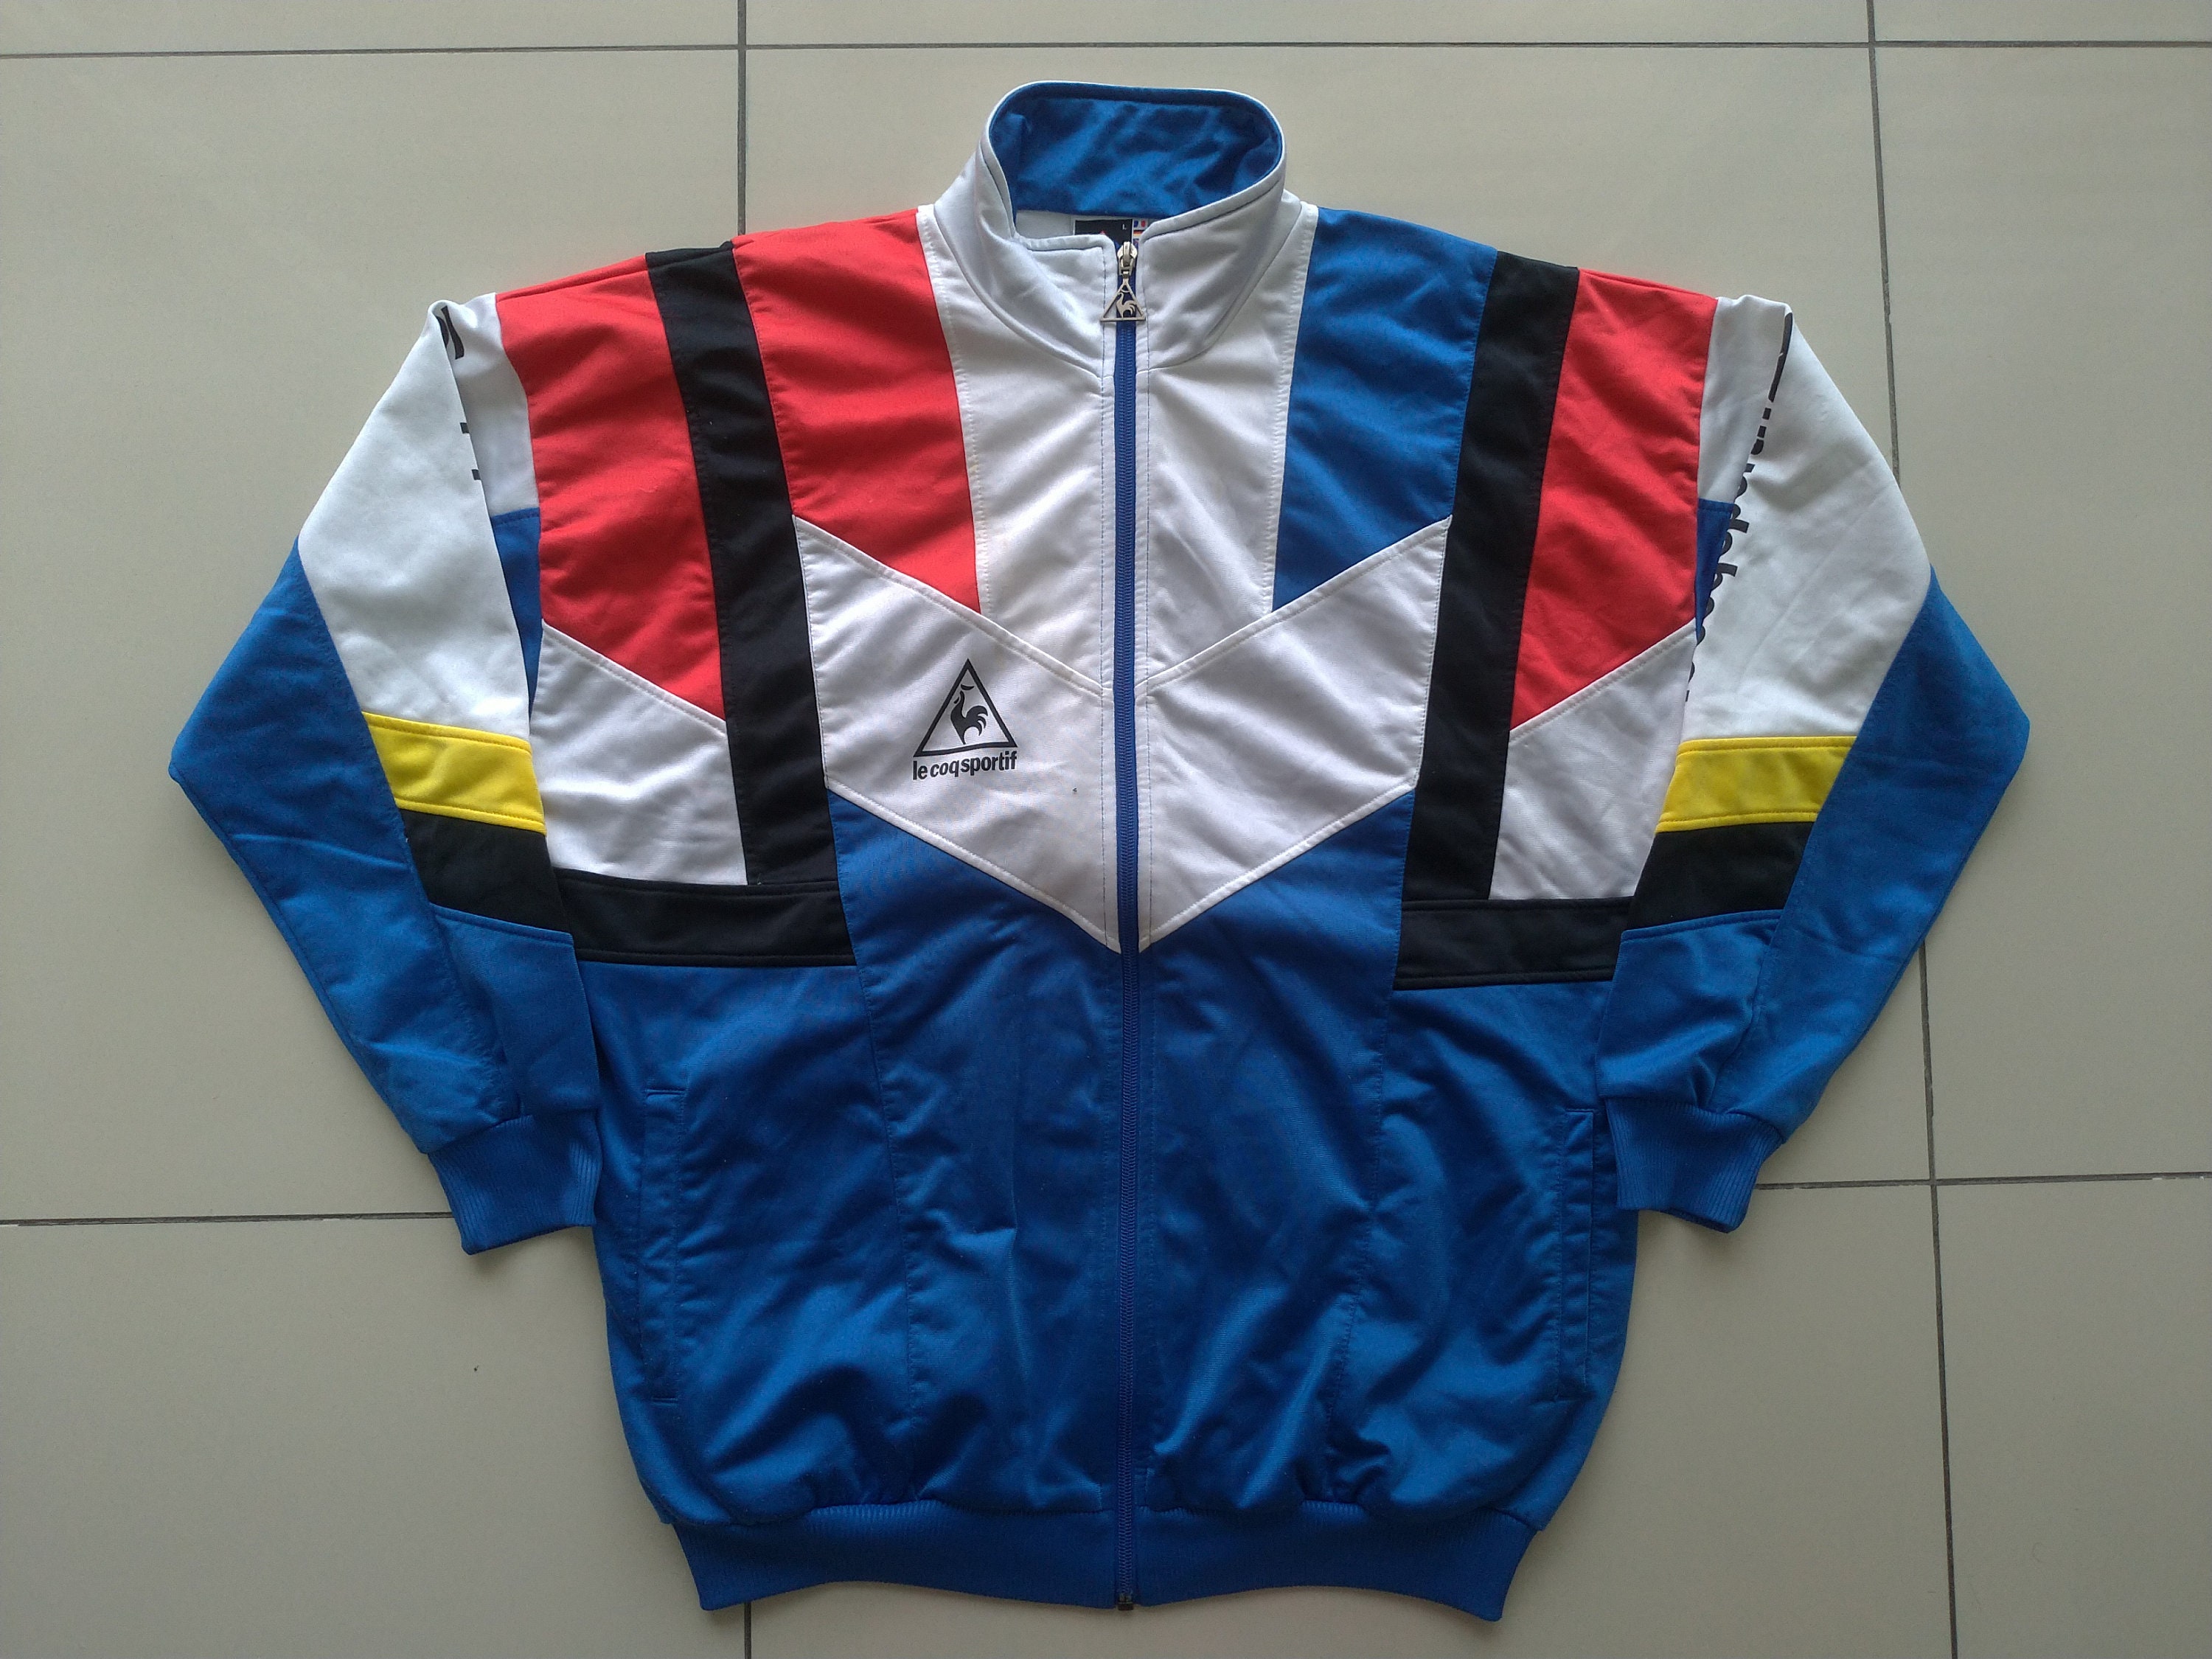 meest verstoring Gemeenten Le Coq Sportif Jacket Track Suit Zipper Tri Color Windbreaker - Etsy Finland